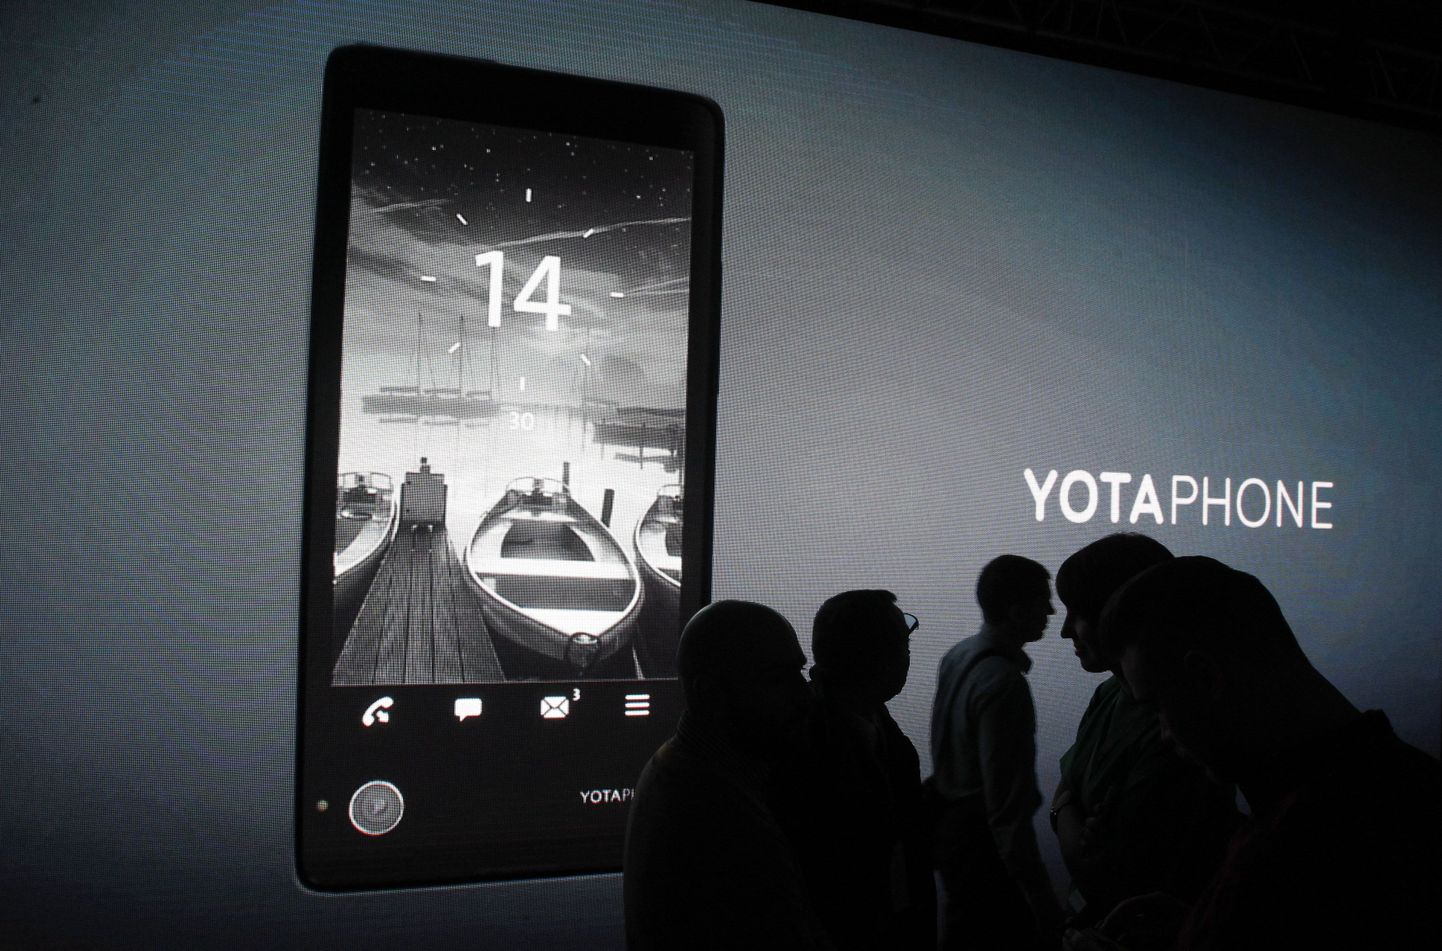 Официальный выход YotaPhone второго поколения ожидается в декабре 2014 года.